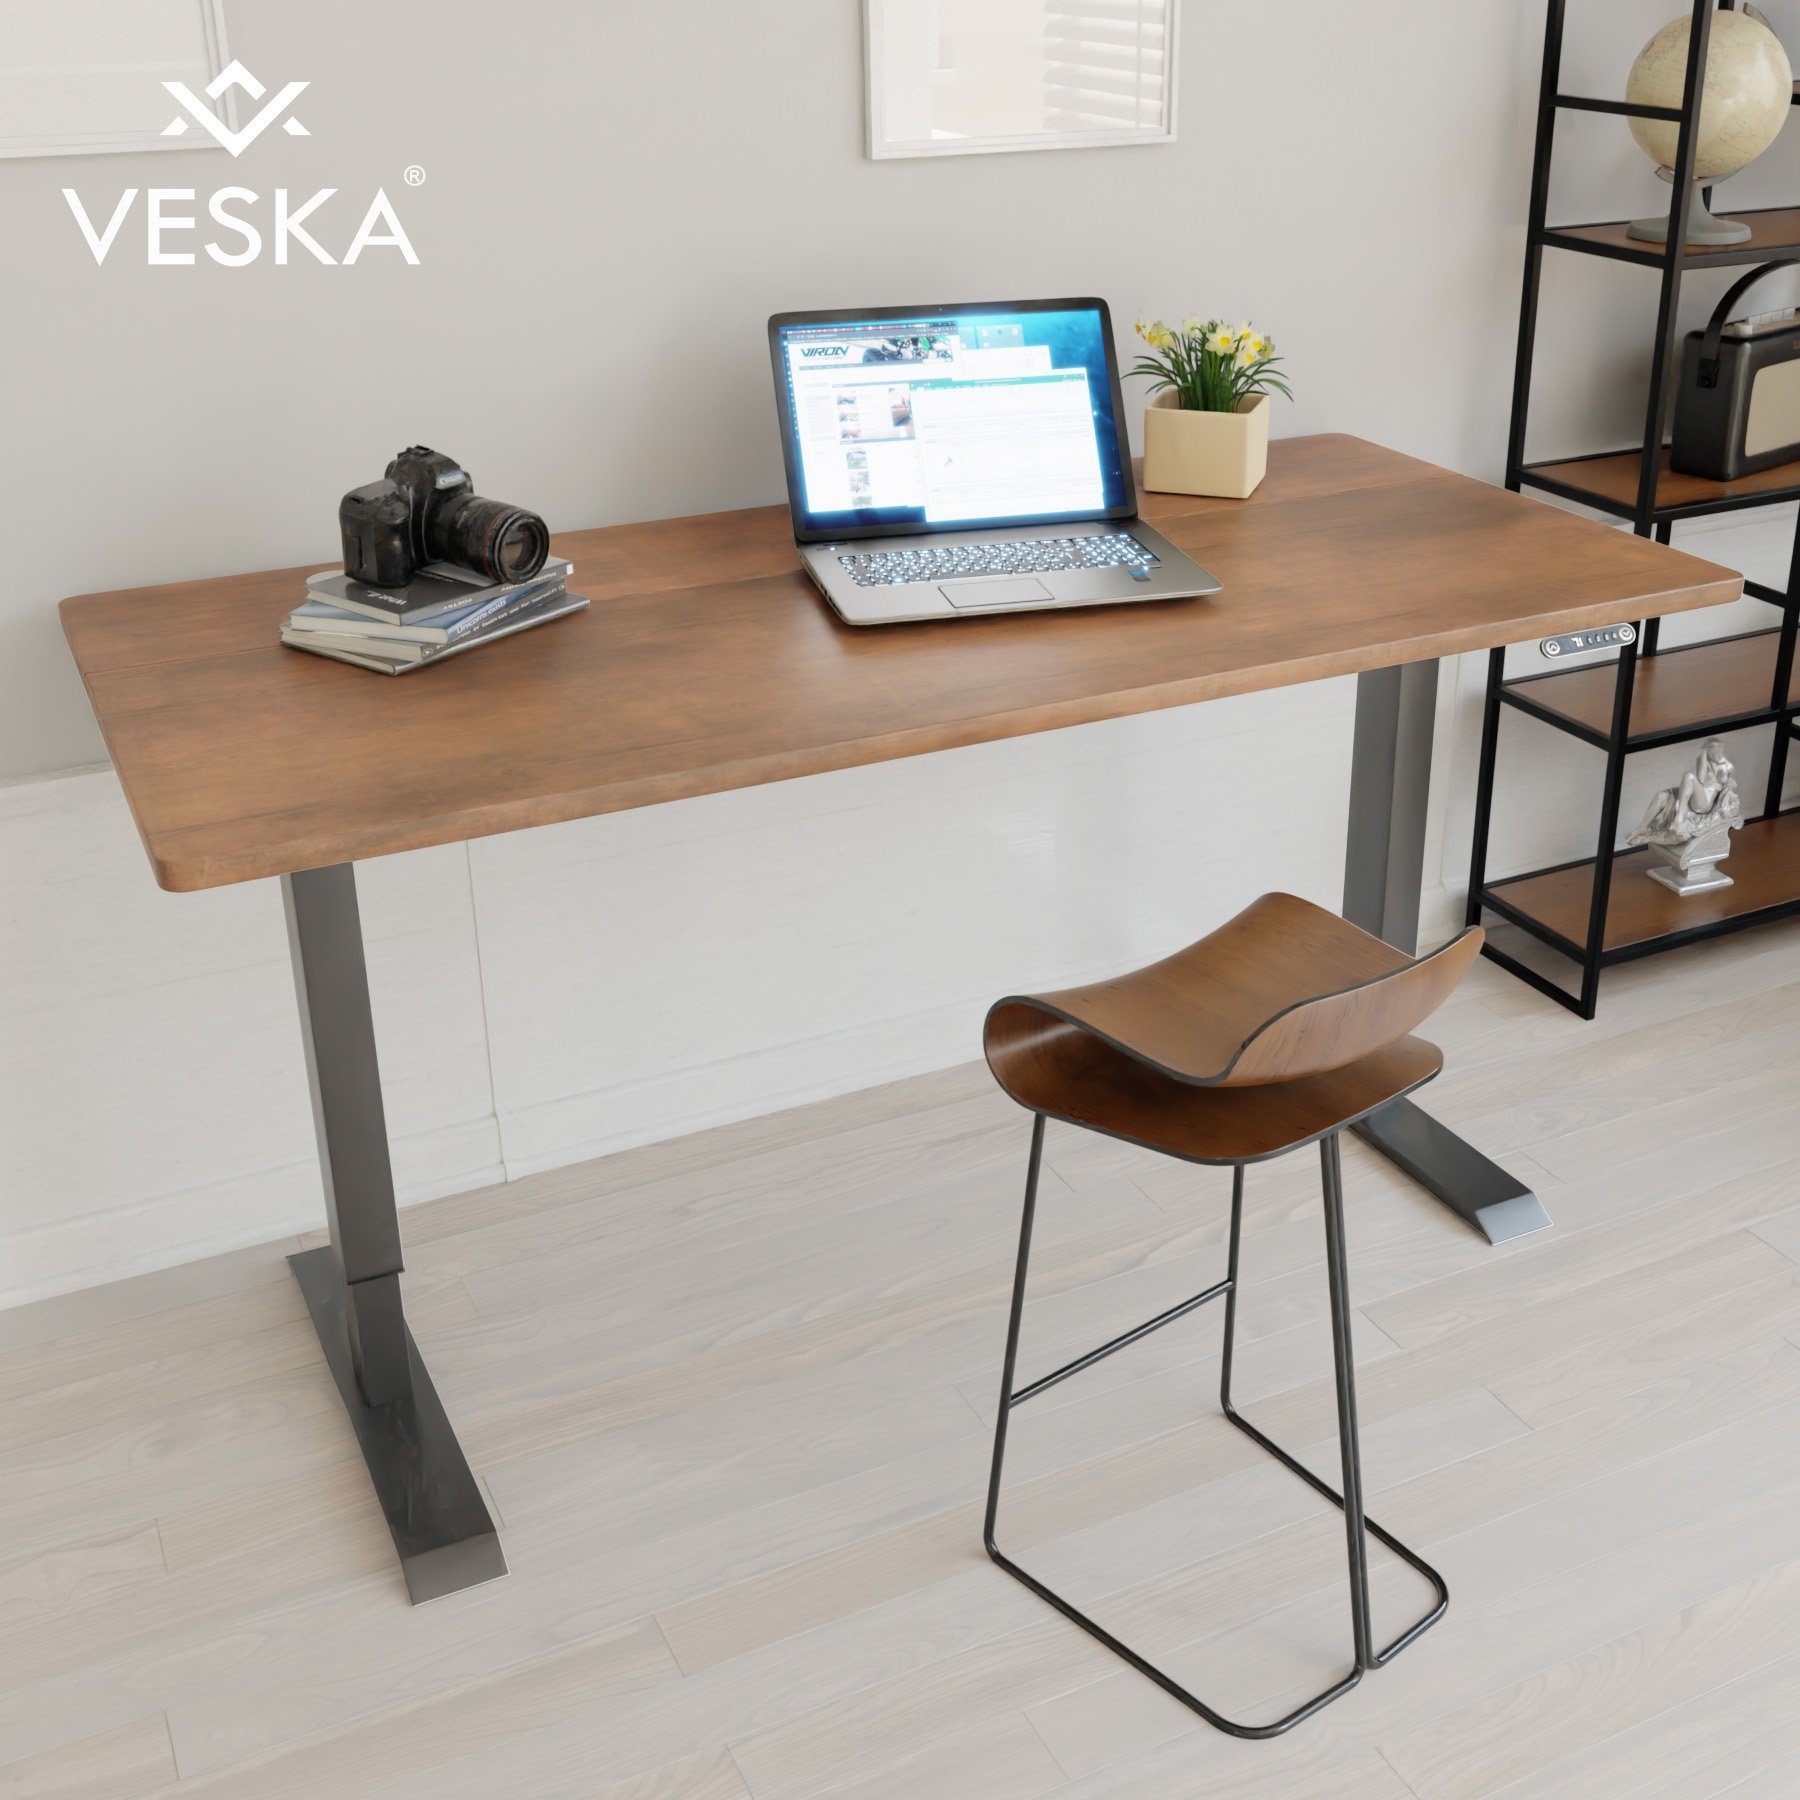 VESKA Schreibtisch Höhenverstellbar 140 x 70 cm - Bürotisch Elektrisch mit Touchscreen - Sitz- & Stehpult Home Office Anthrazit | Antik